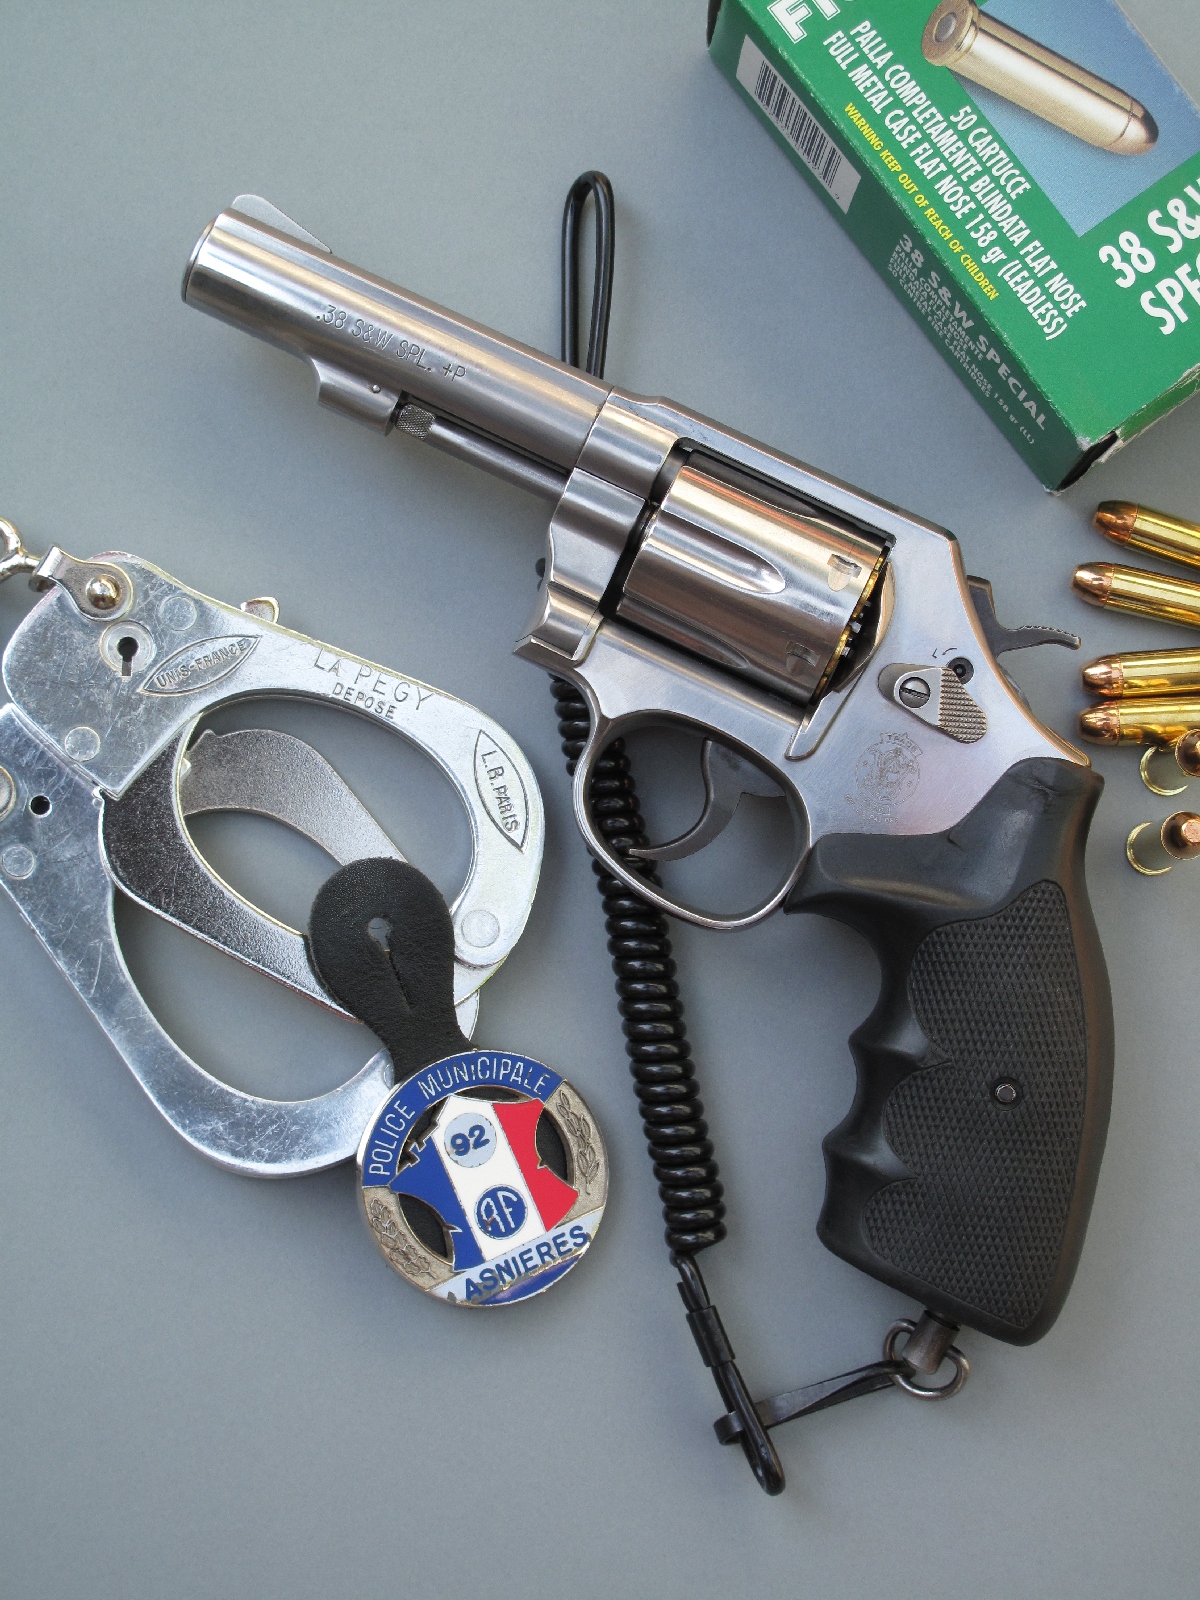 Le revolver Smith & Wesson modèle 64 est accompagné ici d’une paire de menottes, d’un badge de la police municipale et d’une boîte de cartouches de calibre .38 Special manufacturées par la firme italienne Fiocchi.